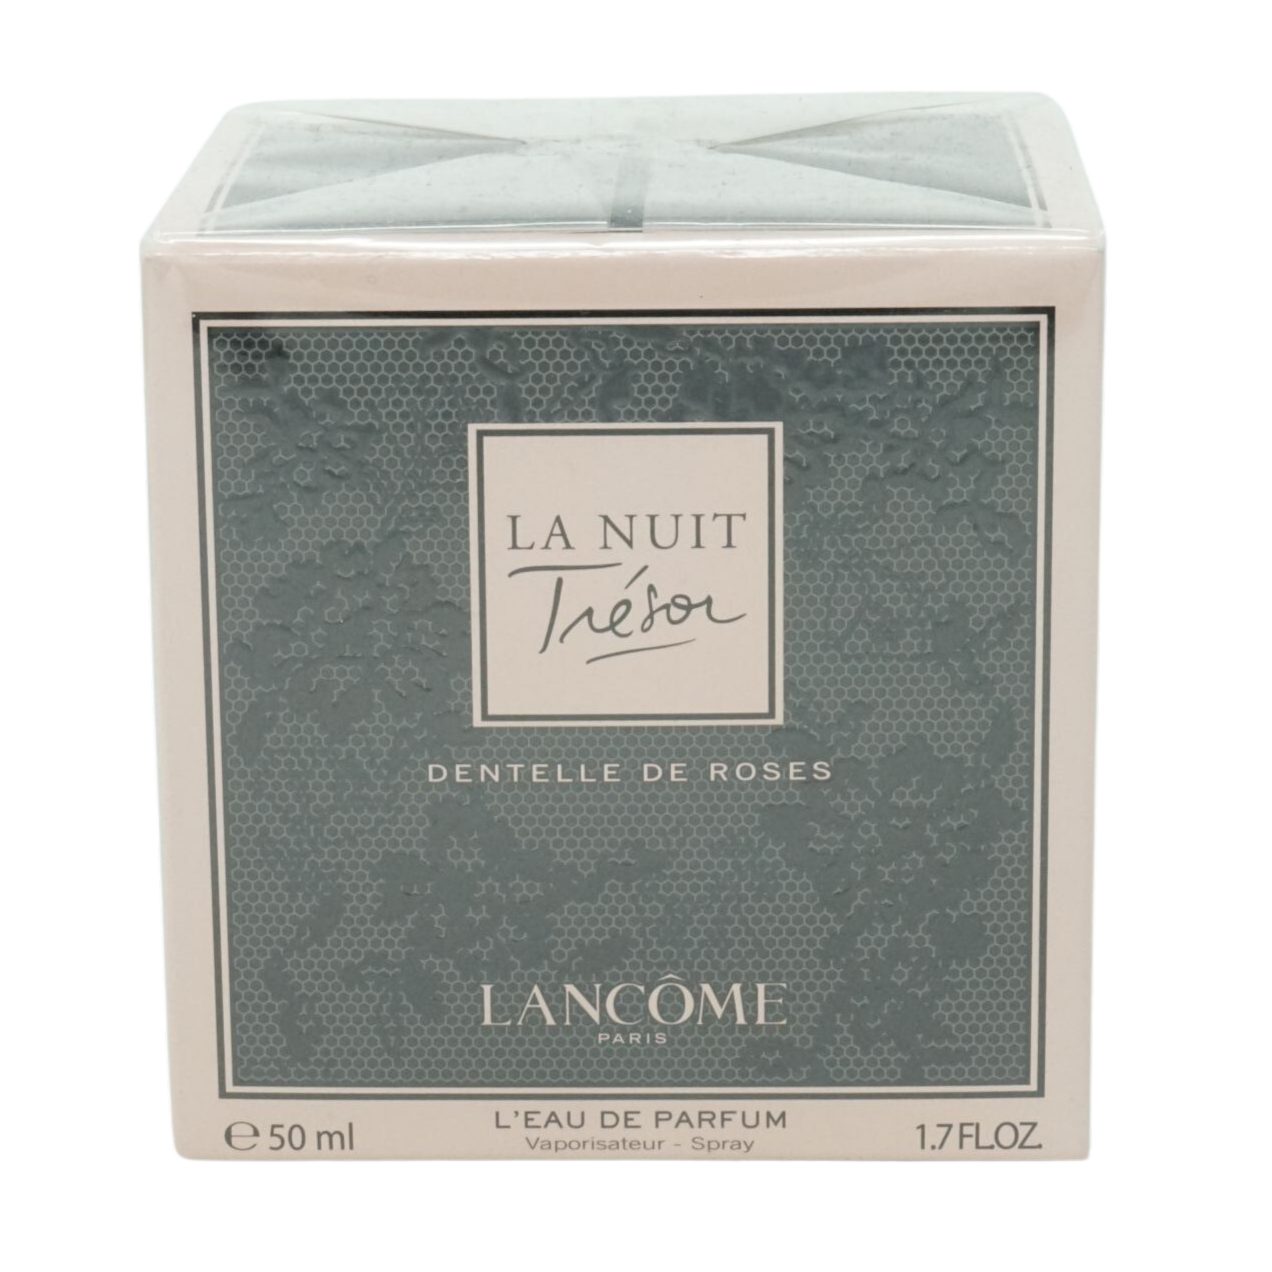 LANCOME Lancome Parfum de 50ml La roses Nuit de Eau Eau Parfum